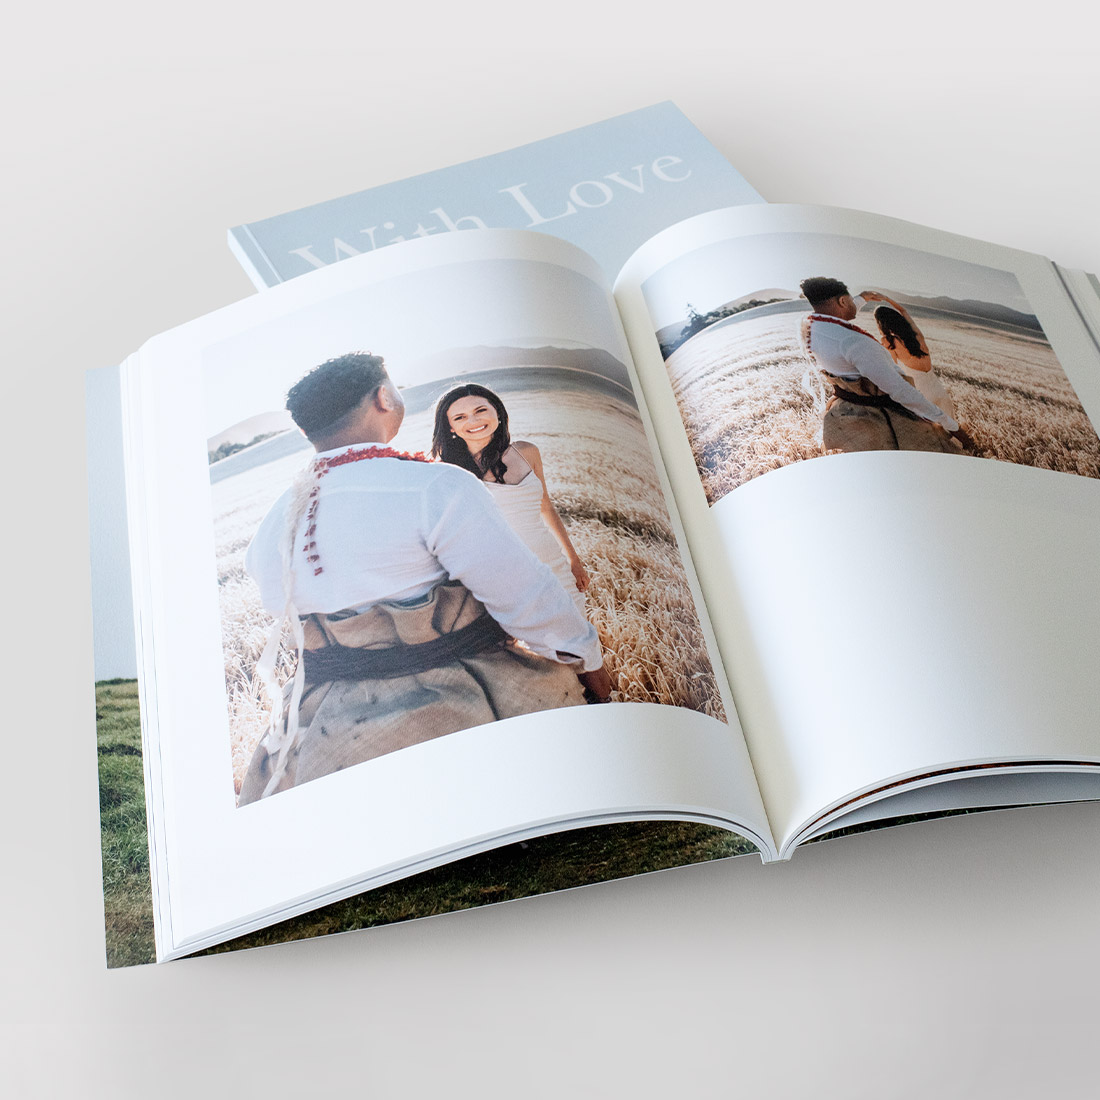 Revista aberta mostrando a divulgação de fotos do casamento.